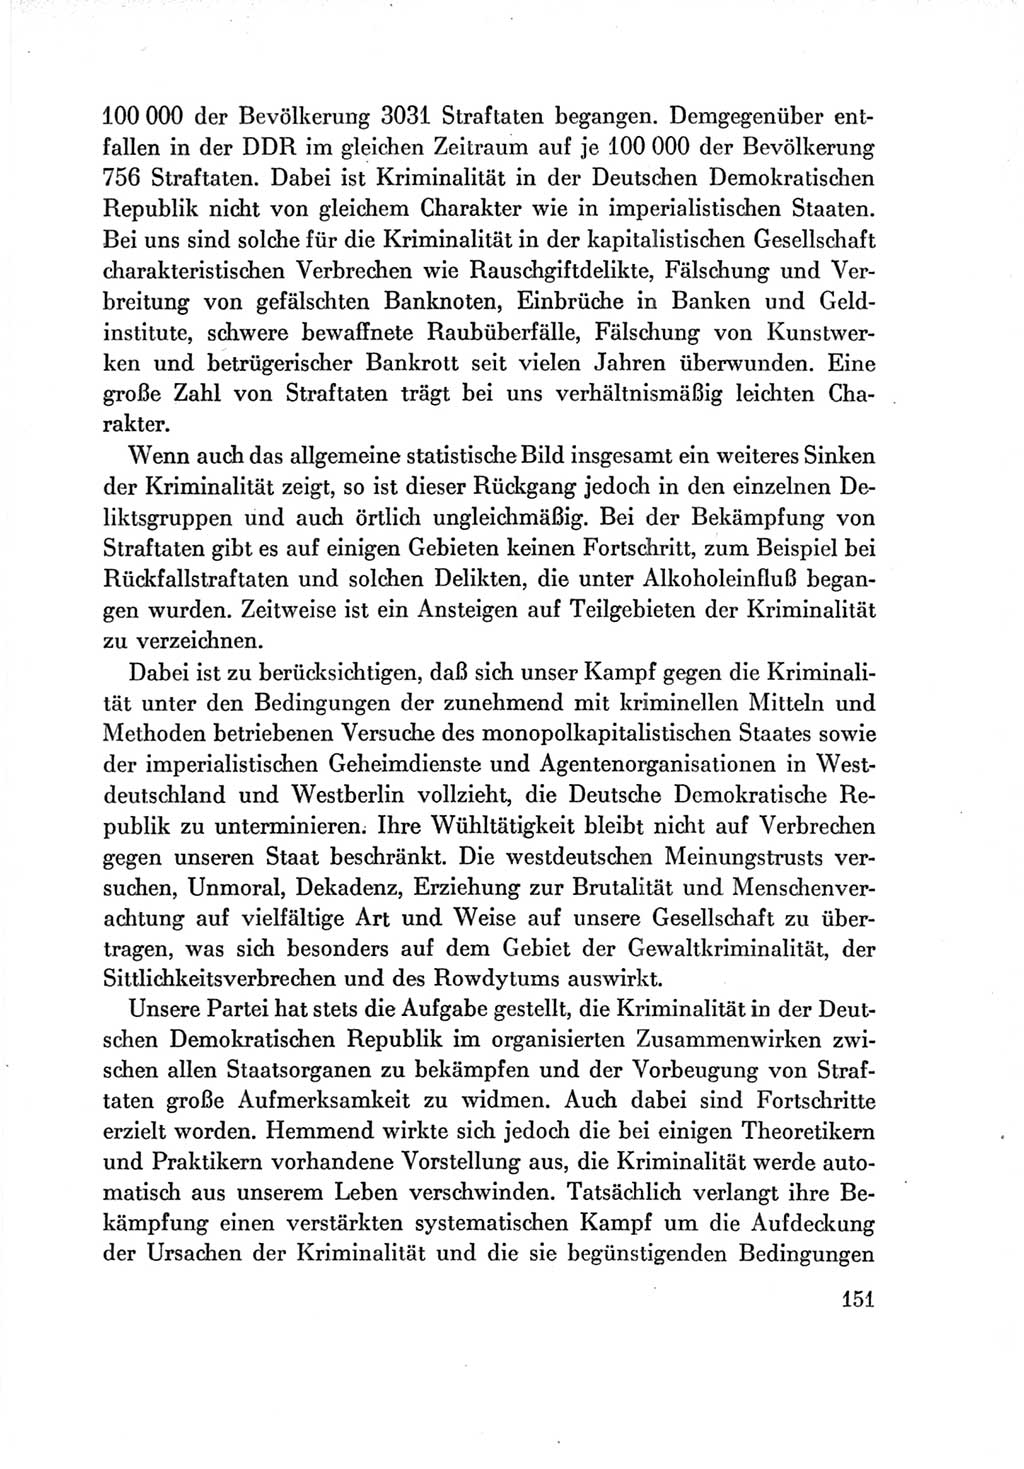 Protokoll der Verhandlungen des Ⅶ. Parteitages der Sozialistischen Einheitspartei Deutschlands (SED) [Deutsche Demokratische Republik (DDR)] 1967, Band Ⅳ, Seite 151 (Prot. Verh. Ⅶ. PT SED DDR 1967, Bd. Ⅳ, S. 151)